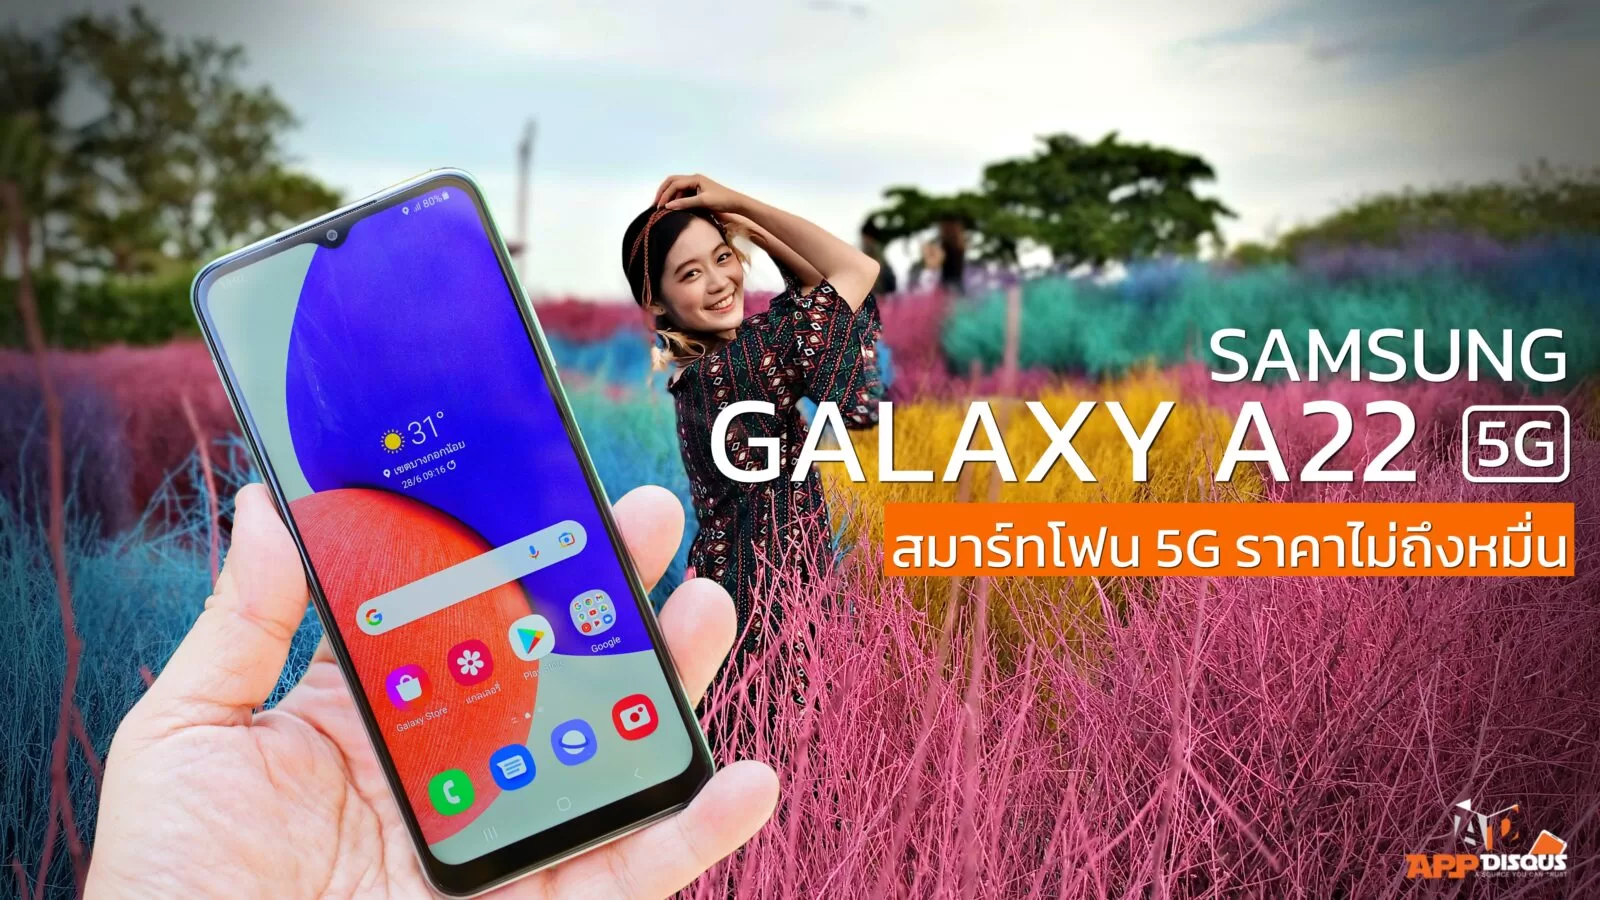 IMG 20210625 180340 1 | 5G | Hands-On : พรีวิวลองใช้ Samsung Galaxy A22 รุ่นเล็กรองรับ 5G ในราคาไม่ถึงหมื่นจากซัมซุง